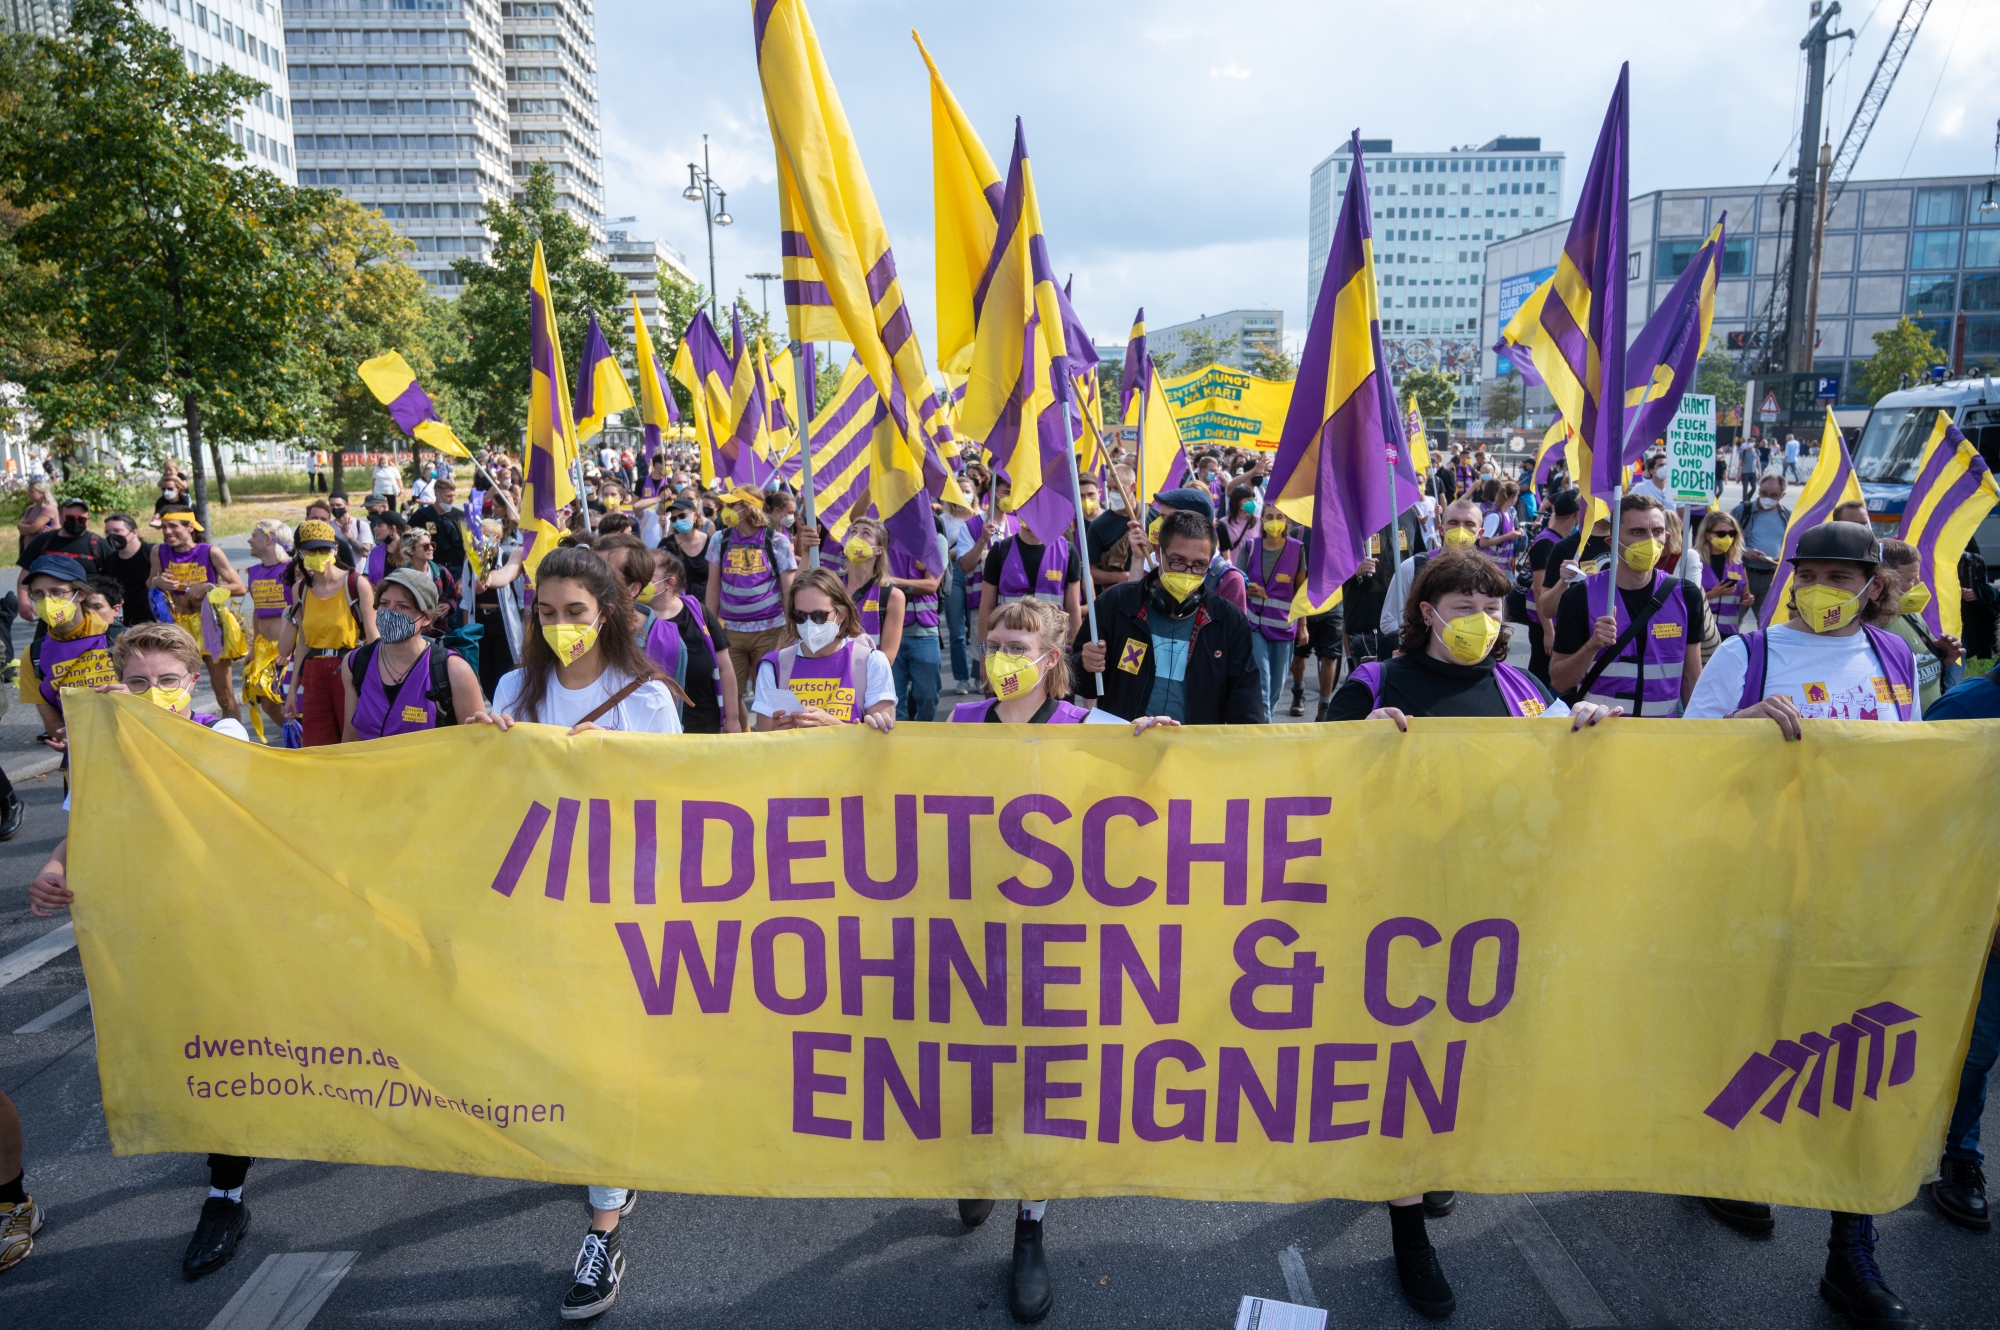 La manifestation a réuni 20'000 personnes venues de tout le pays le 11 septembre dernier à Berlin.